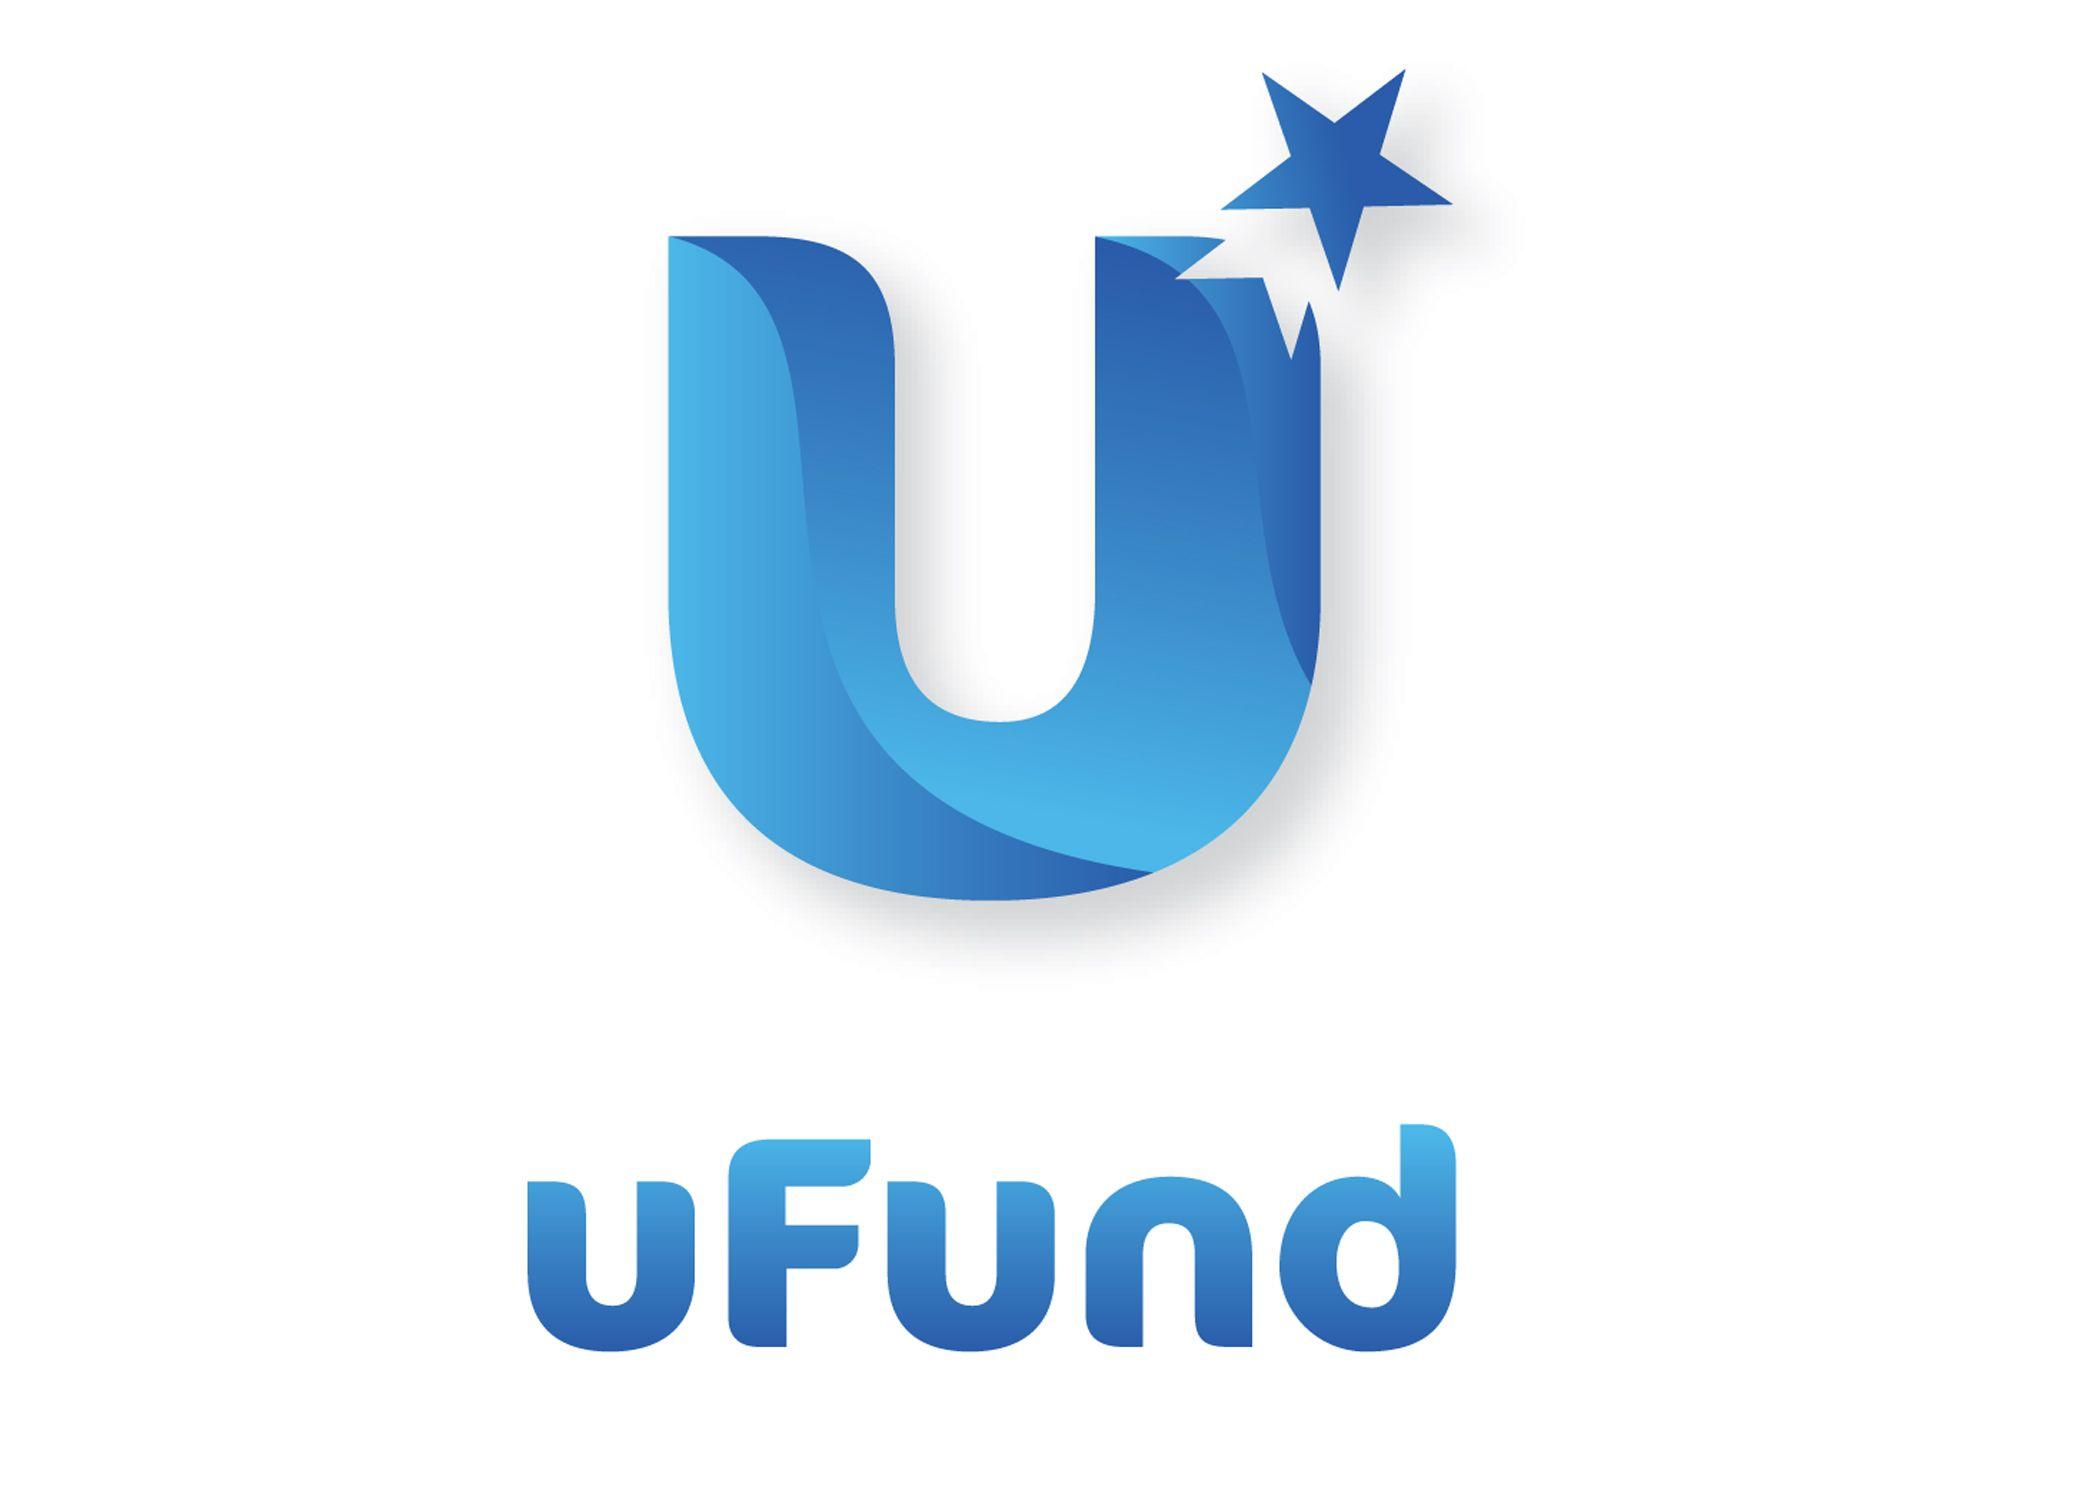 U -turn Logo - File:Logo u fund.jpg - Wikimedia Commons